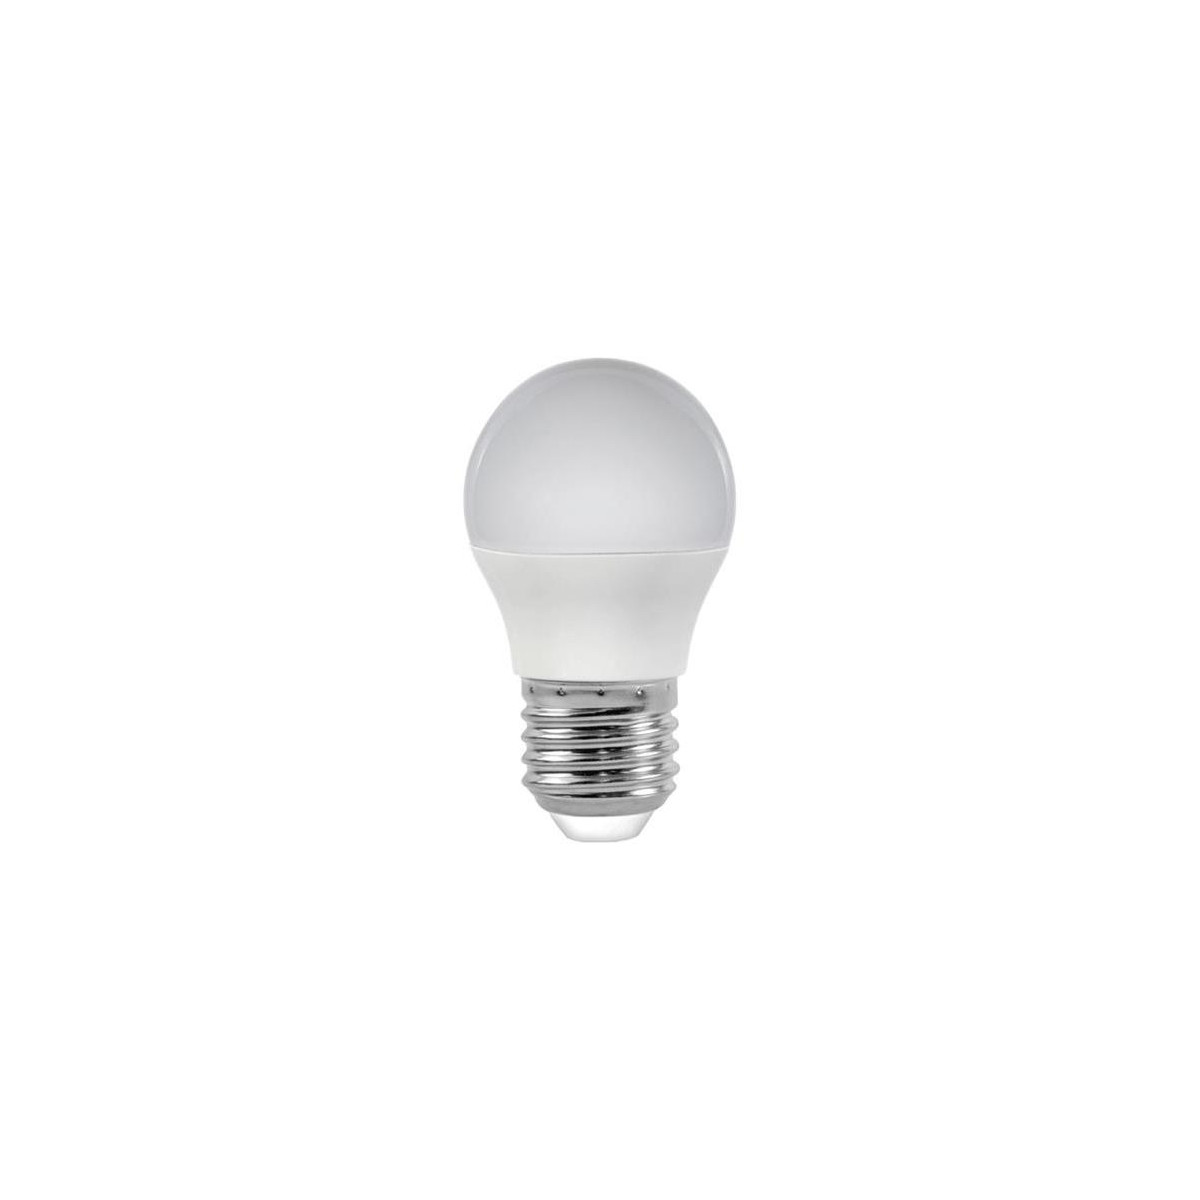 More about Žárovka LED E27 6W G45 bílá přírodní RETLUX RLL 266